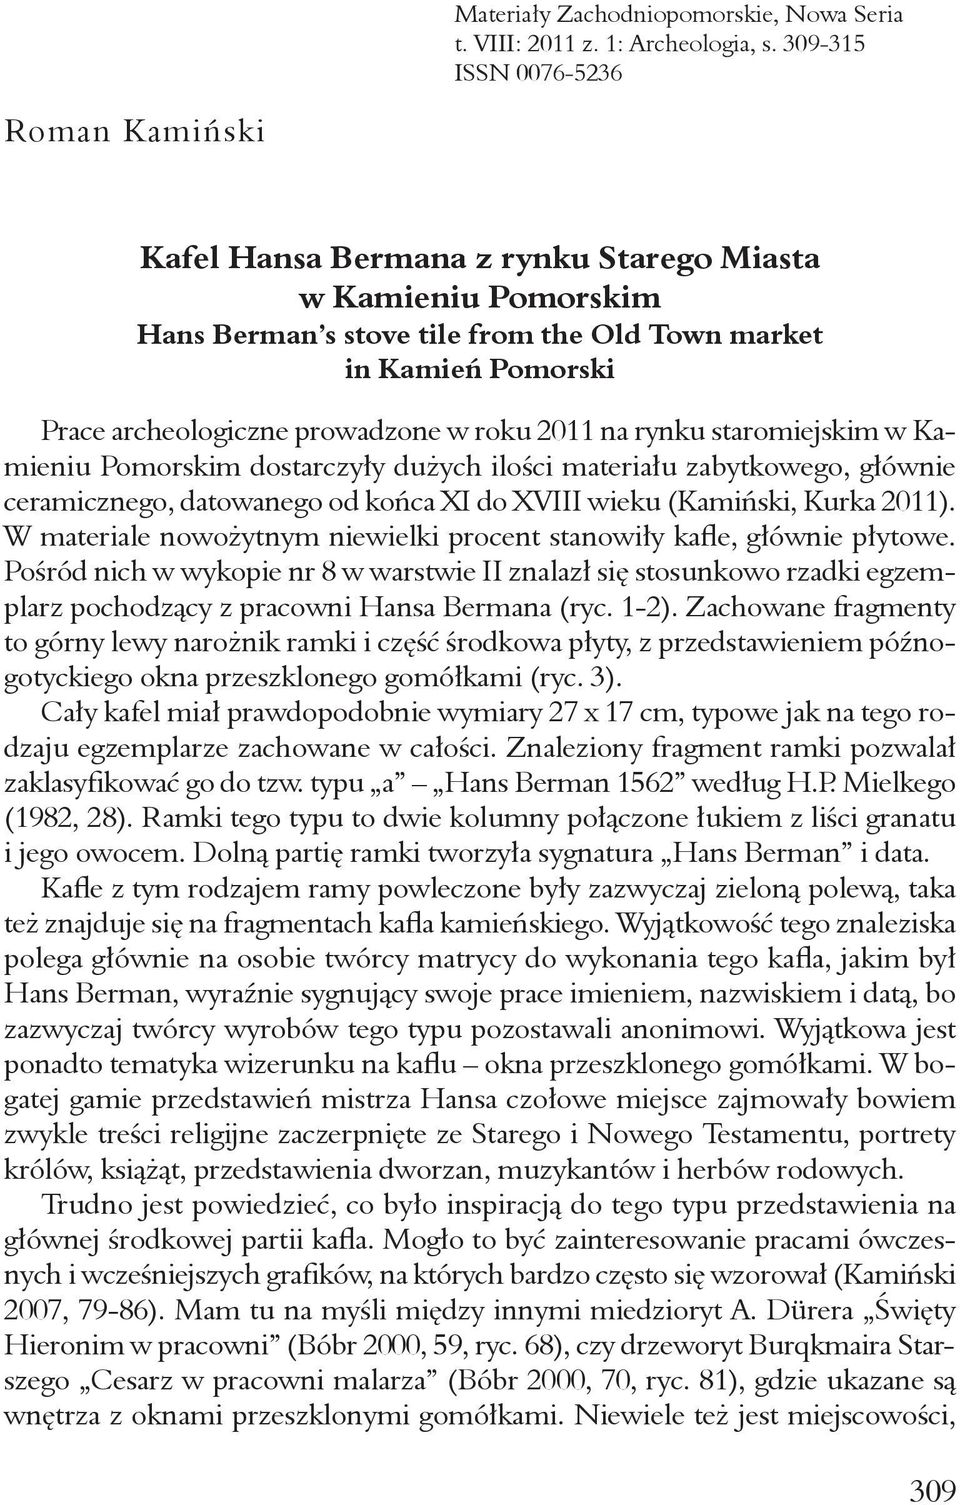 prowadzone w roku 2011 na rynku staromiejskim w Kamieniu Pomorskim dostarczyły dużych ilości materiału zabytkowego, głównie ceramicznego, datowanego od końca XI do XVIII wieku (Kamiński, Kurka 2011).